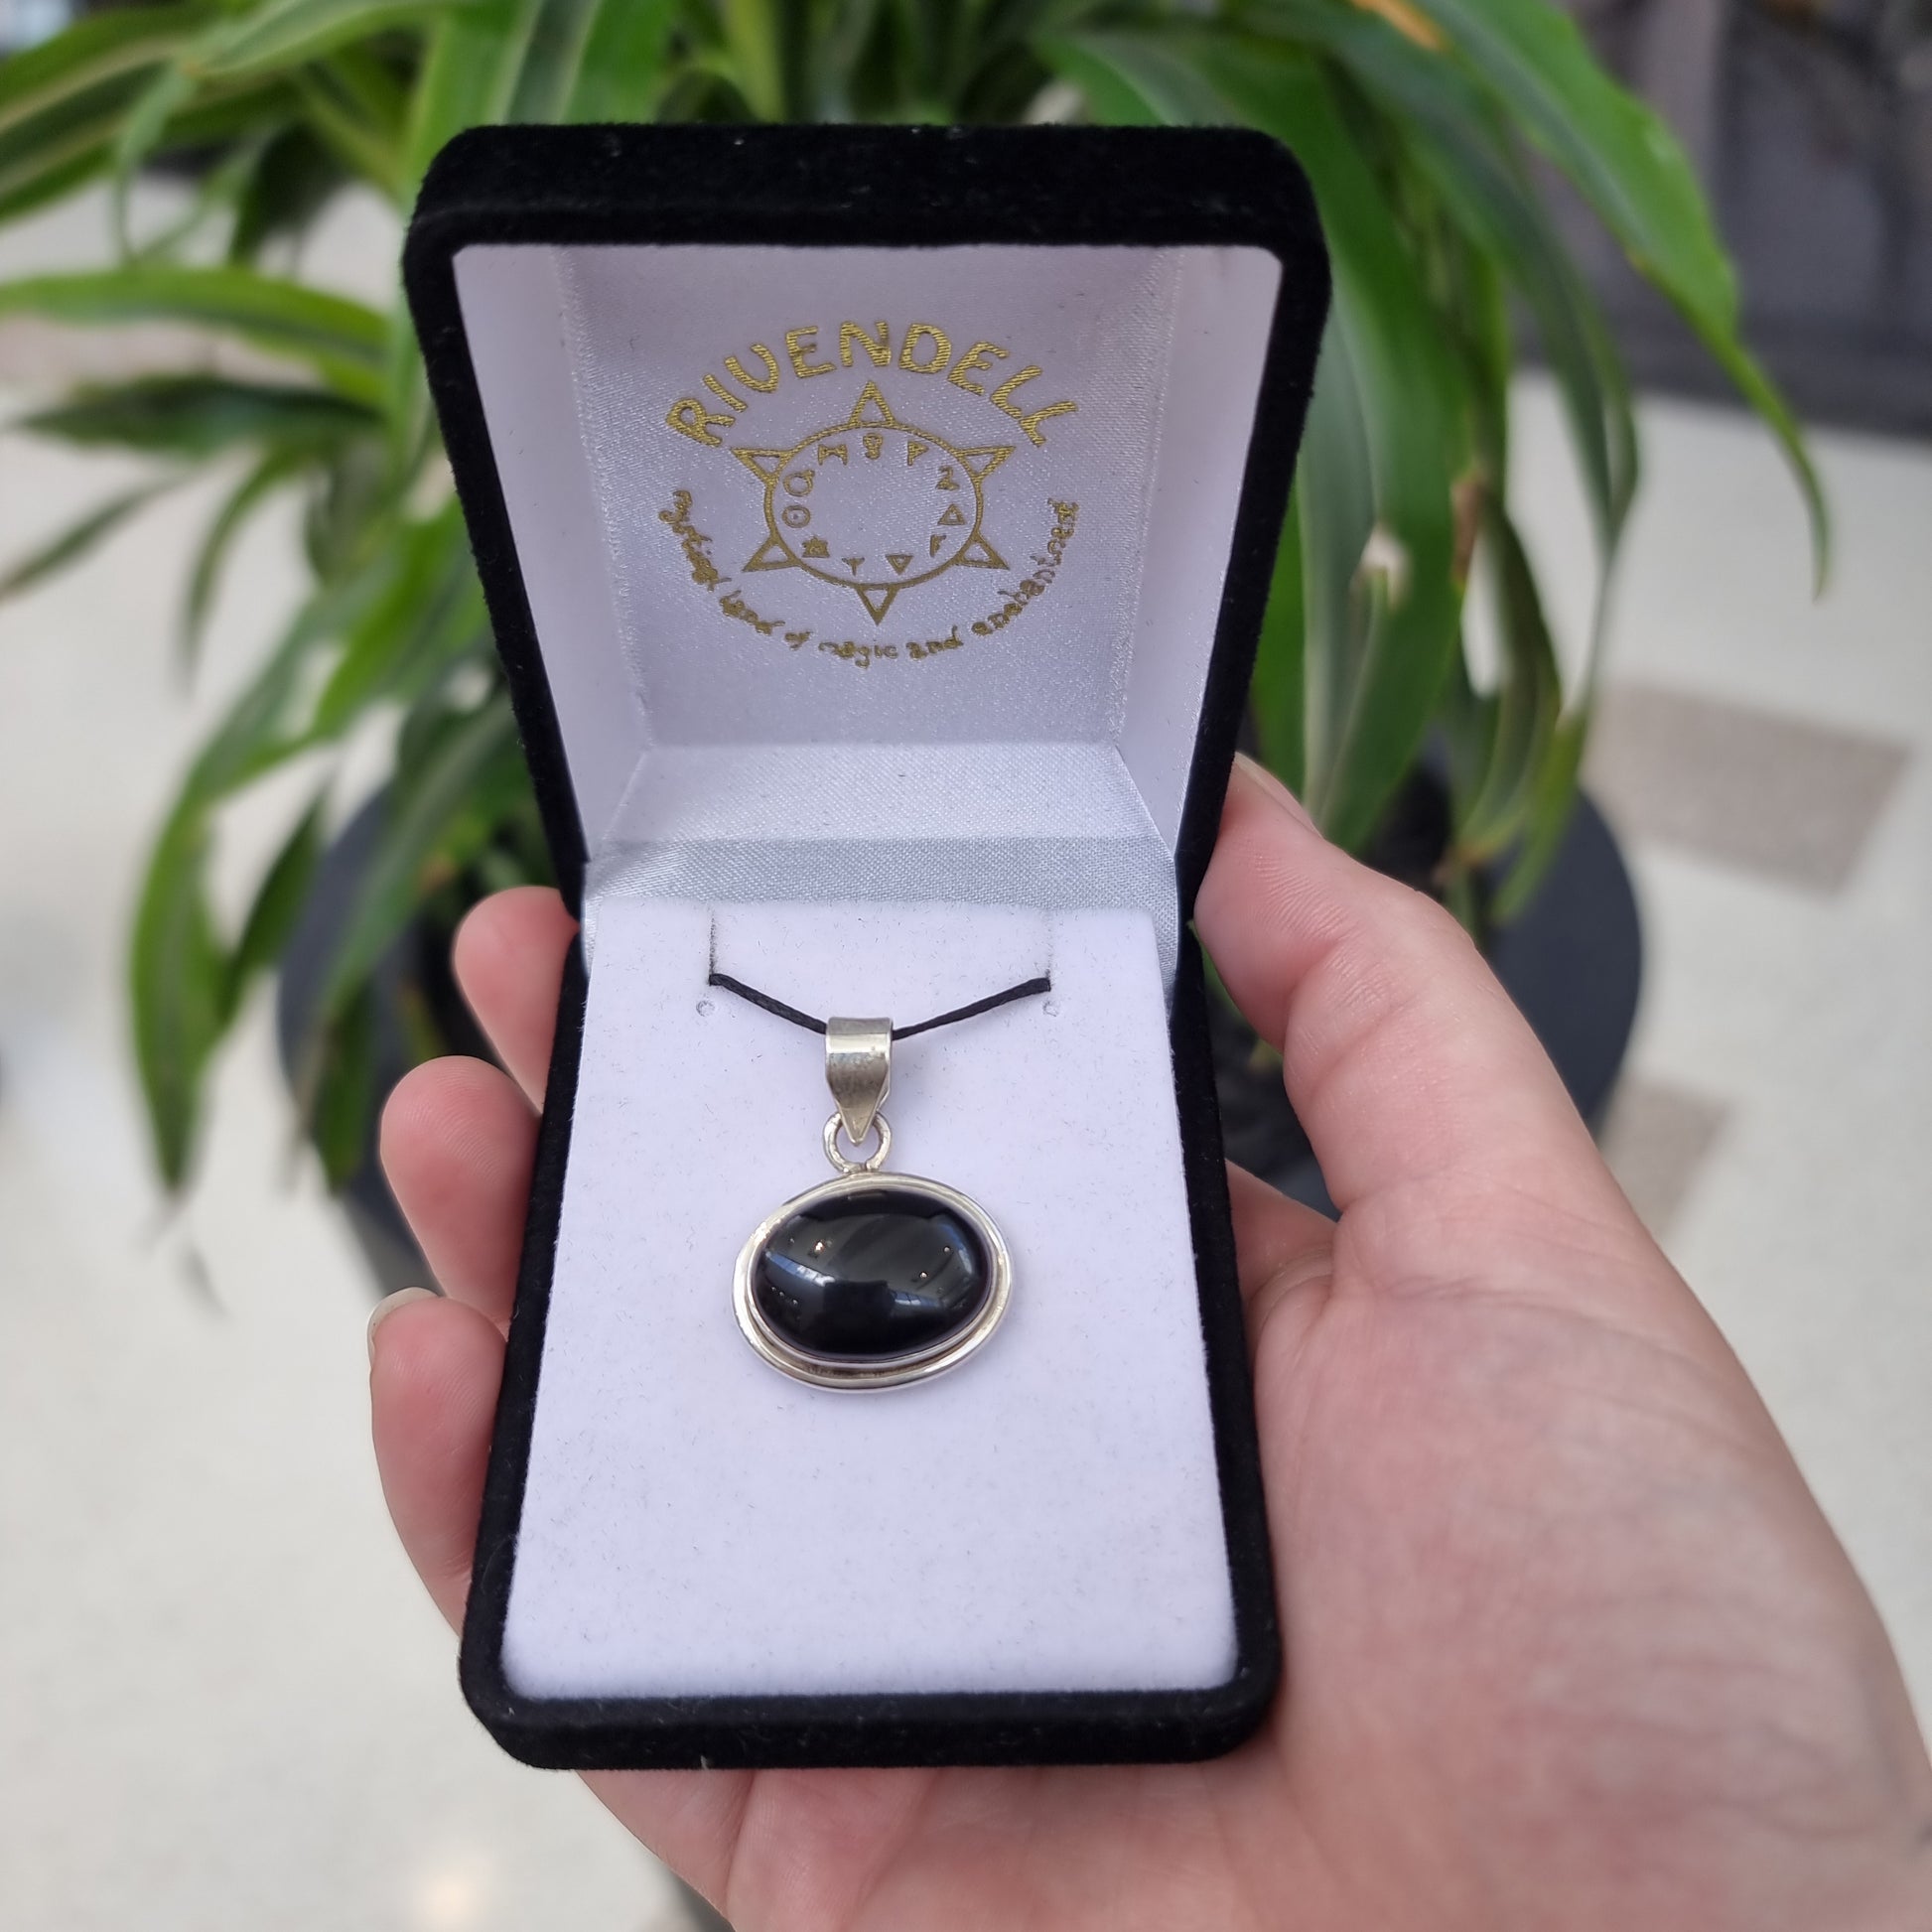 Black onyx pendant - Rivendell Shop